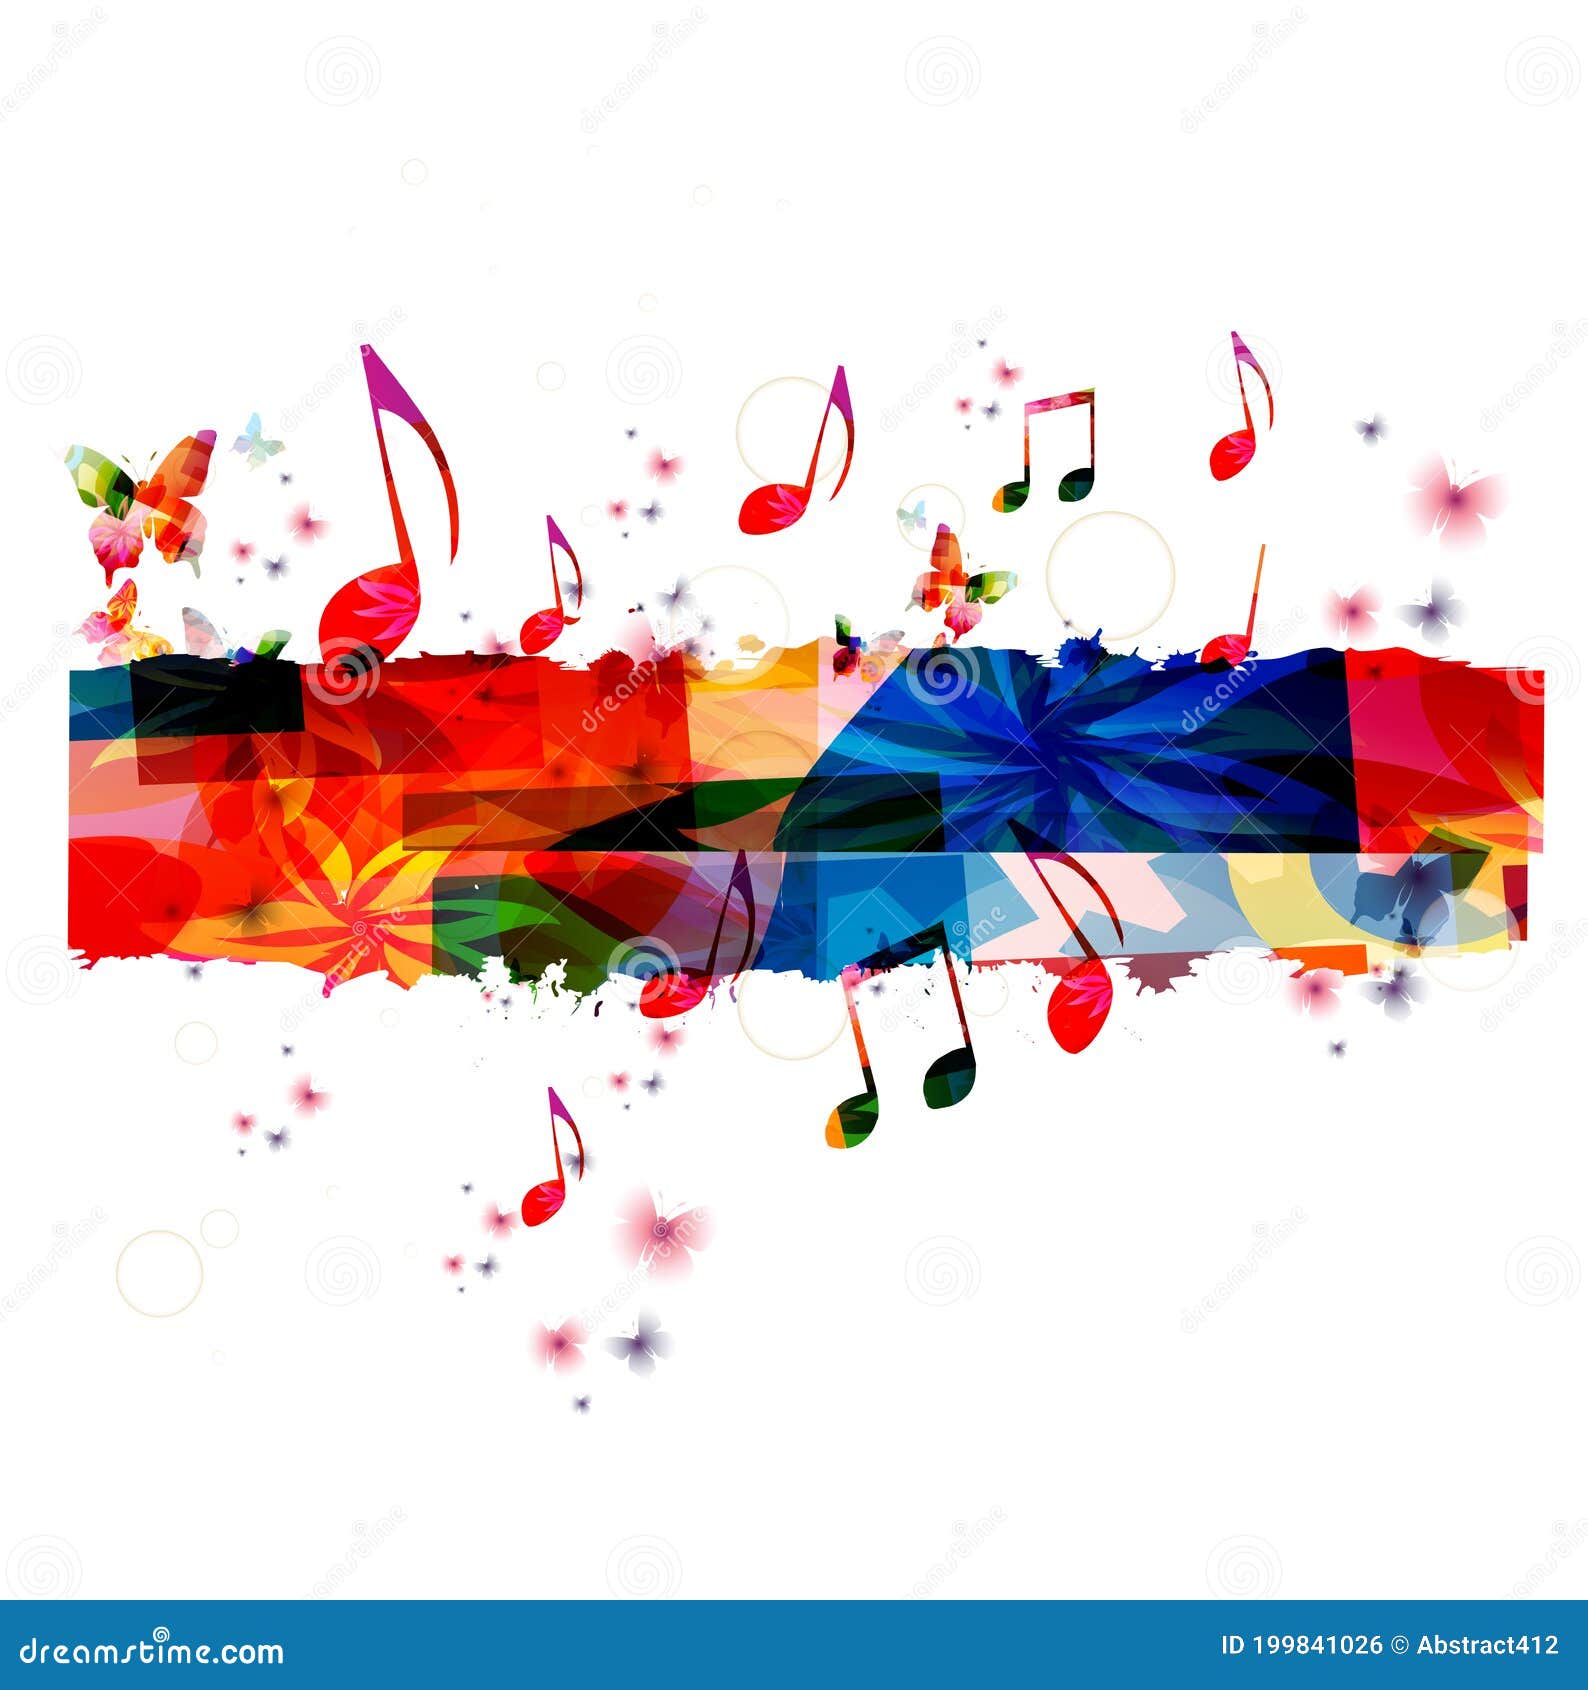 Những nốt nhạc đầy màu sắc luôn đem đến cho tâm hồn chúng ta những cảm xúc tuyệt vời. Hãy cùng xem hình ảnh liên quan để khám phá thêm những bí mật của thế giới âm nhạc.